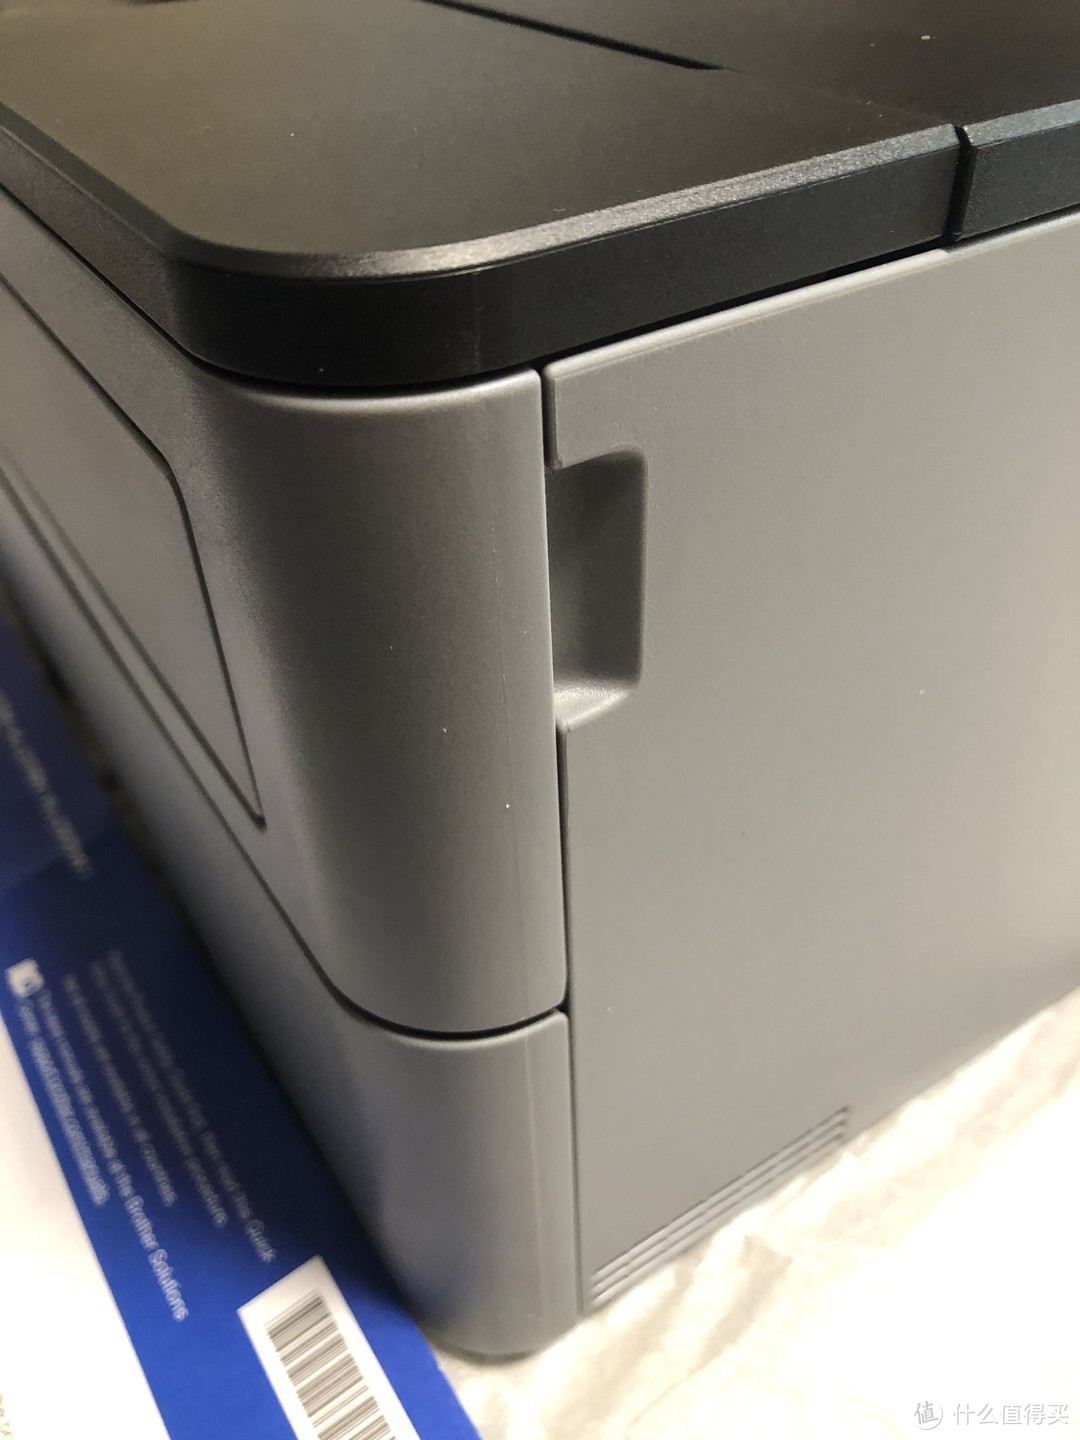 你还在为选择打印机烦恼吗？海淘兄弟打印机简易开箱。